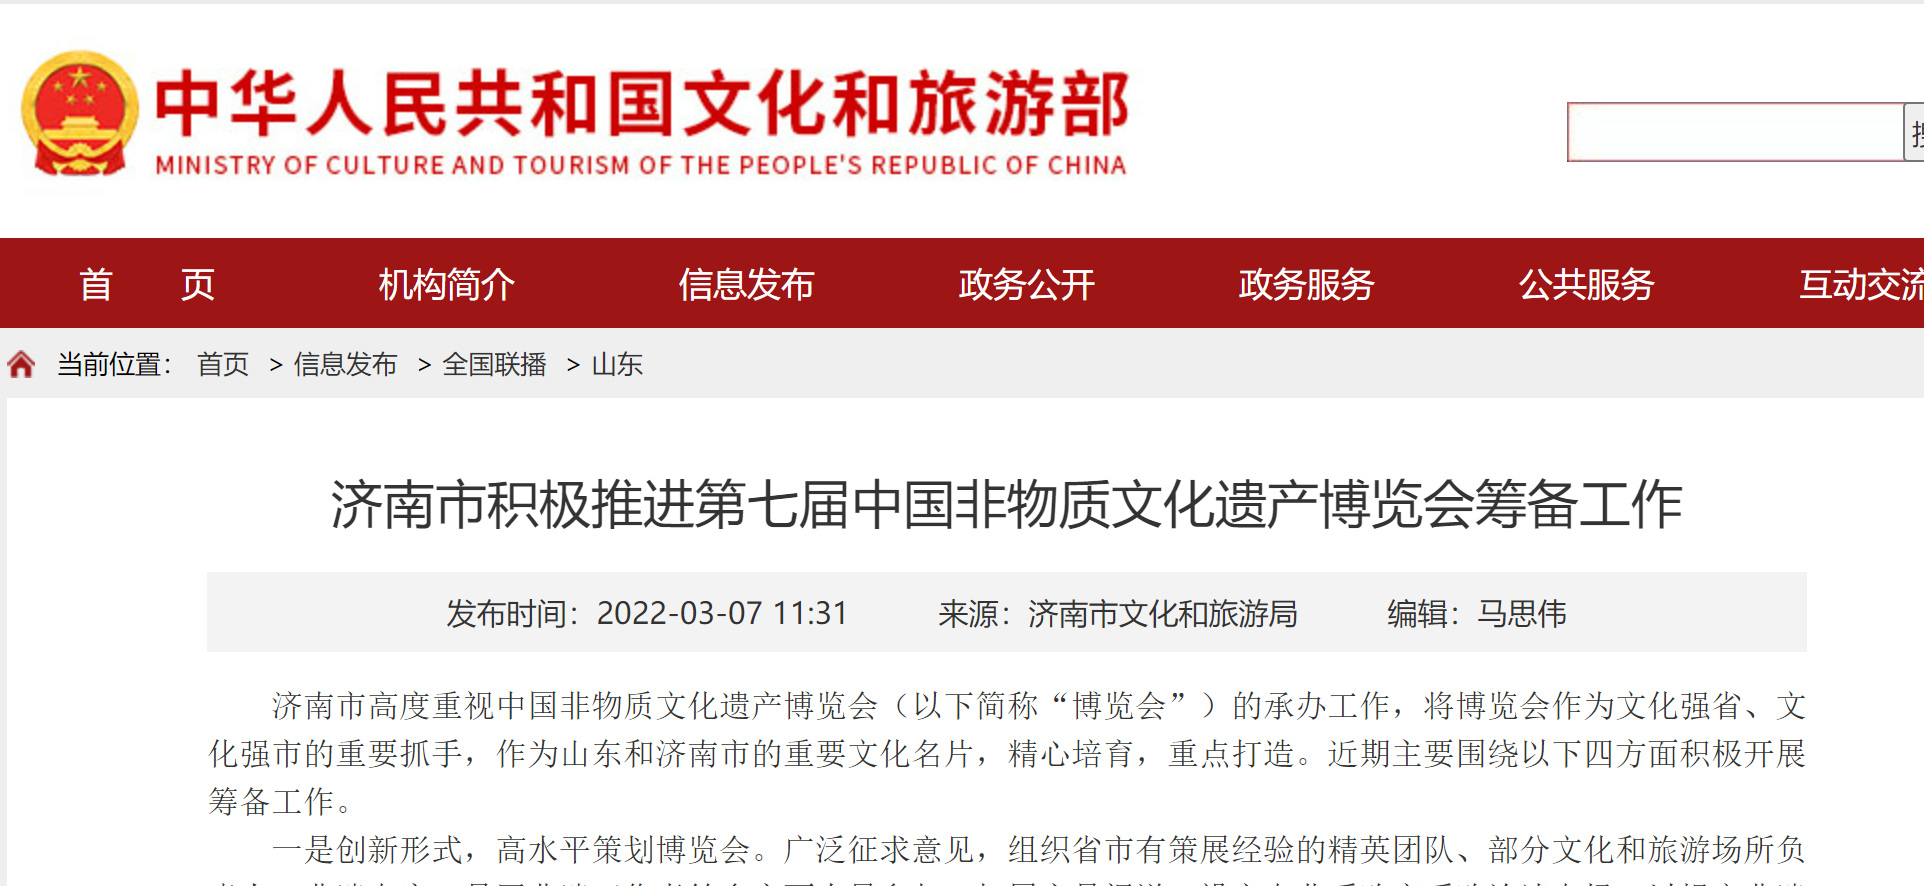 济南市积极推进第七届中国非物质文化遗产博